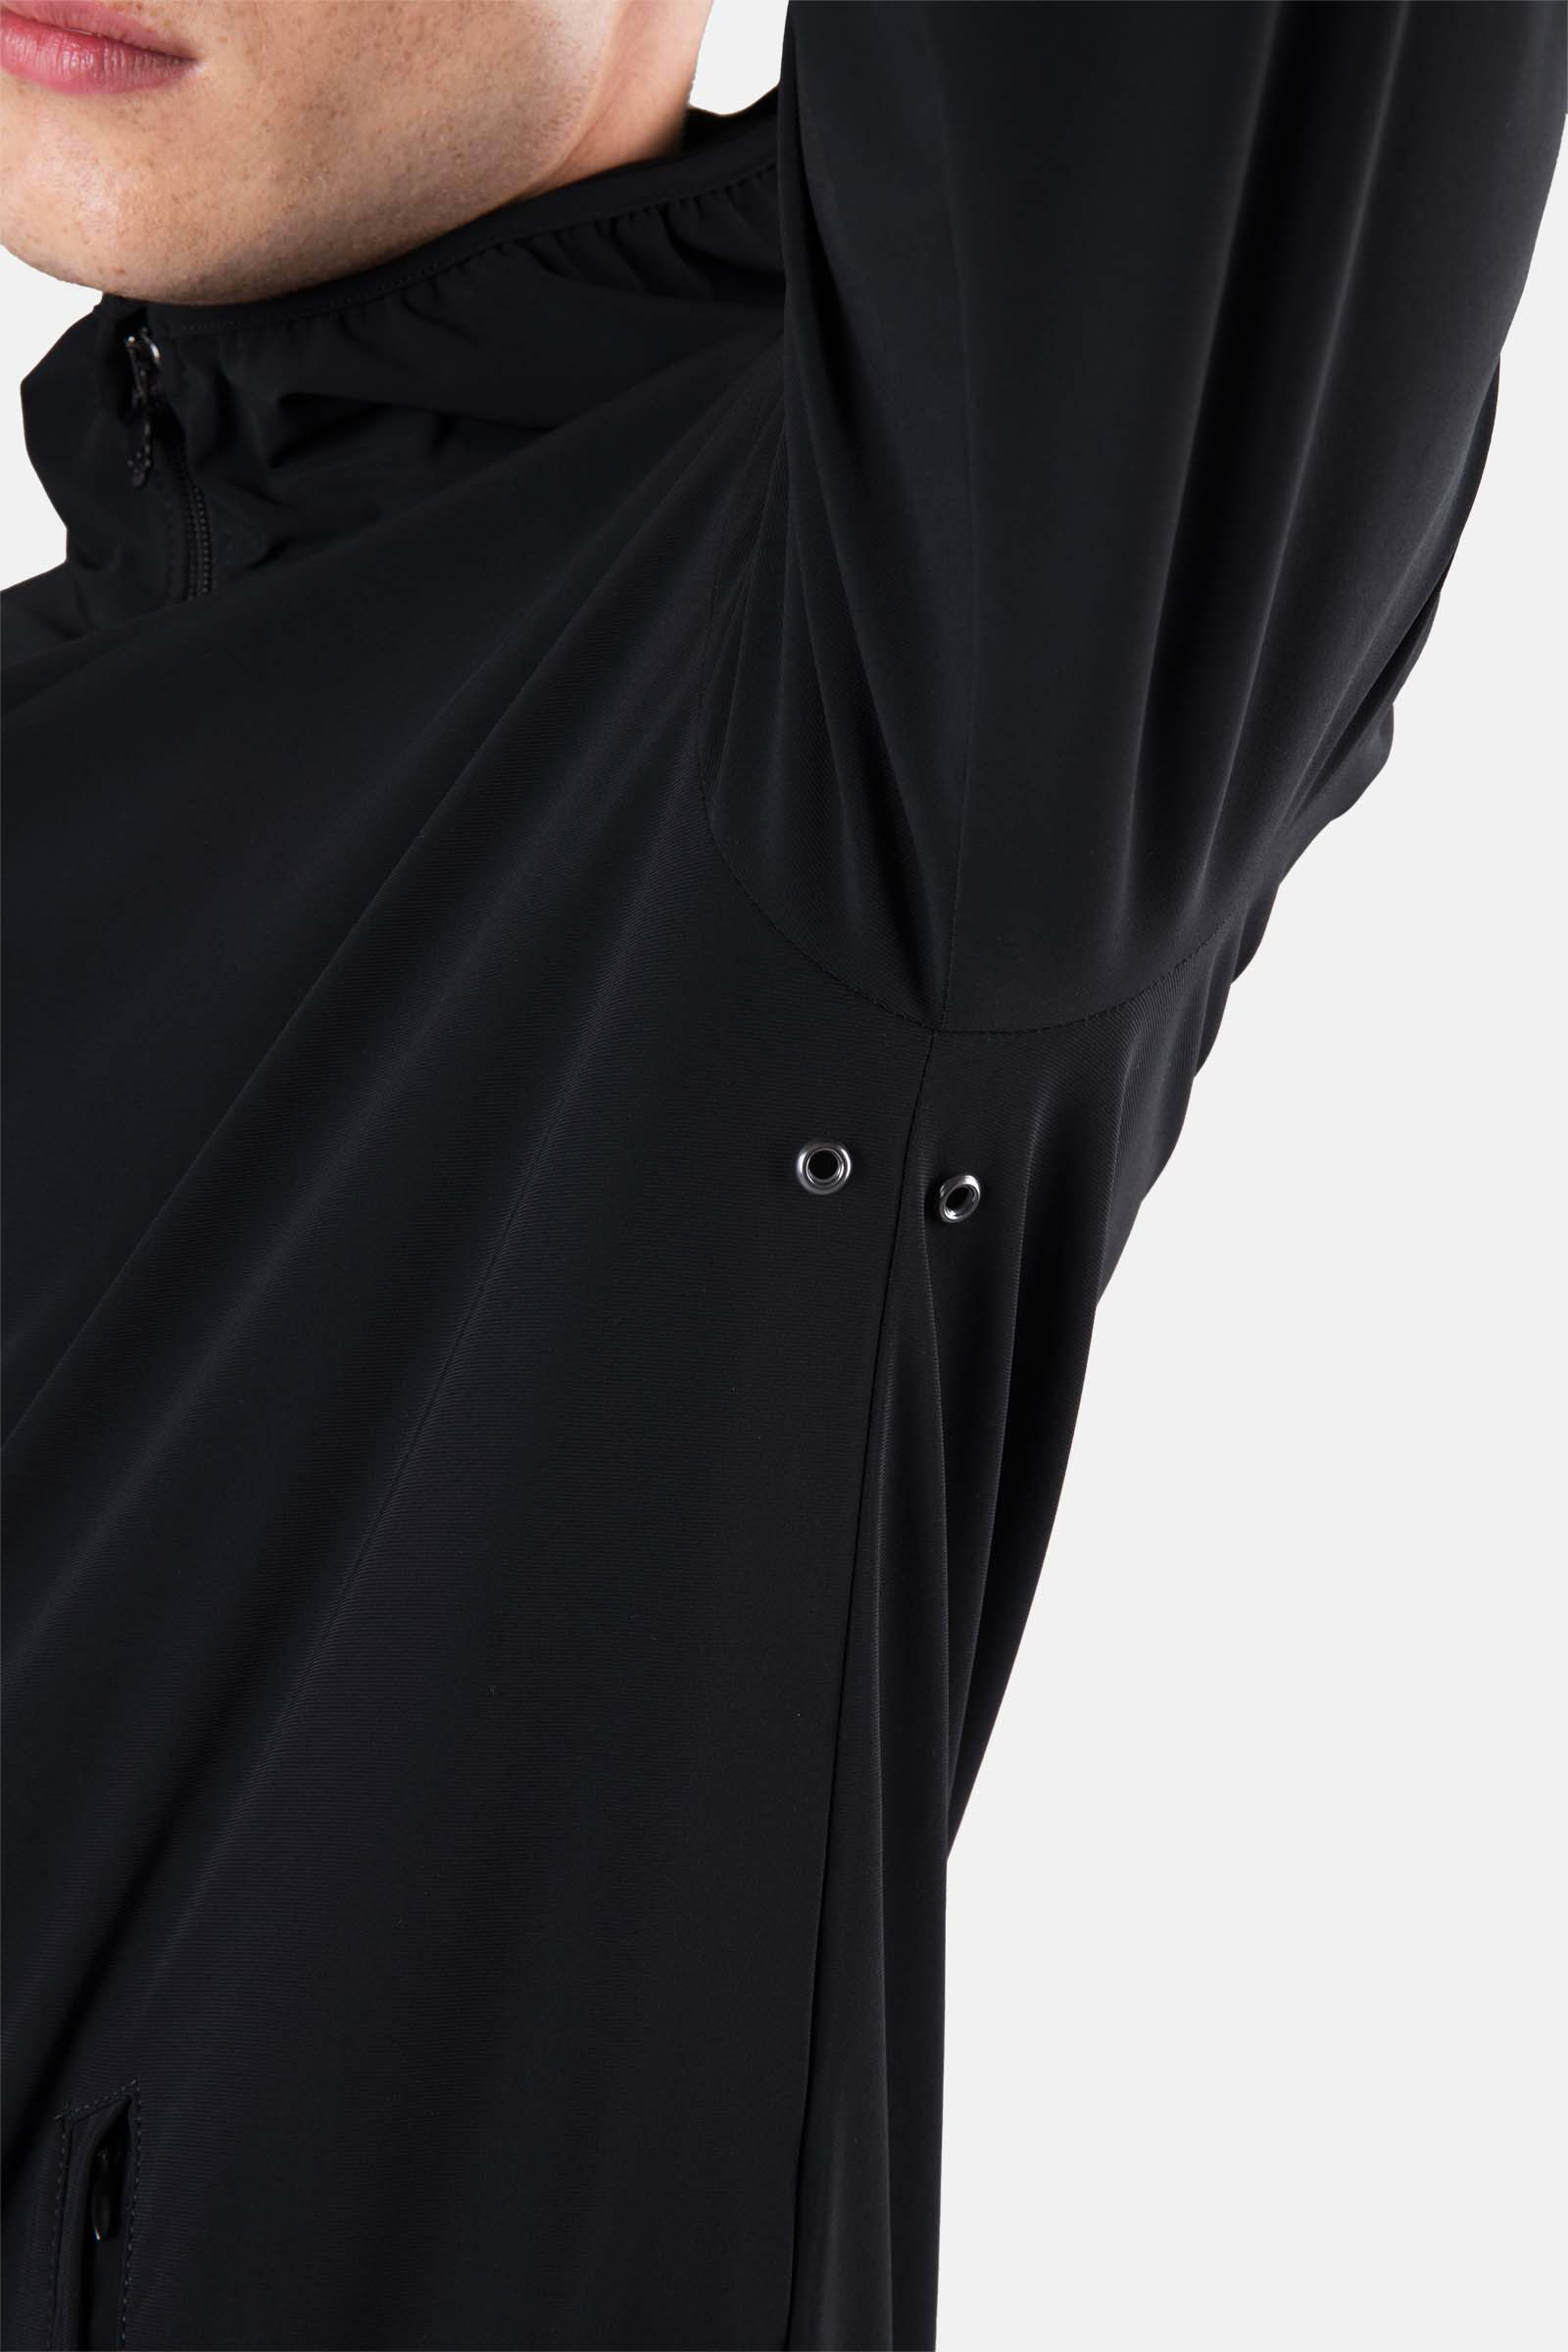 TECH FZ HOODIE - BLACK - Hydrogen - Luxury Sportwear